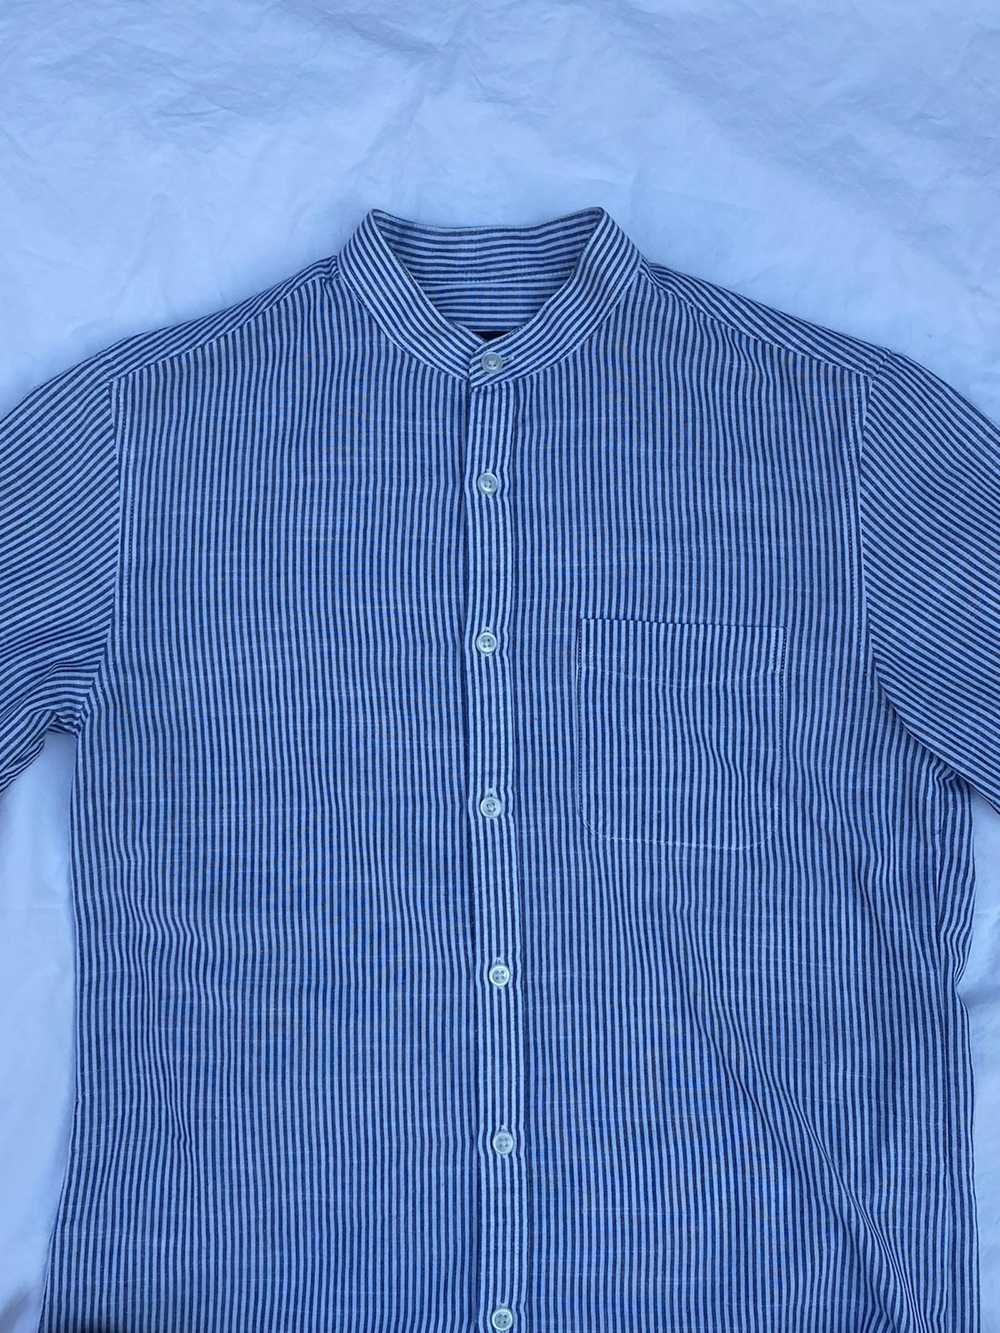 Vintage Mandarin Collar Shirt - image 2